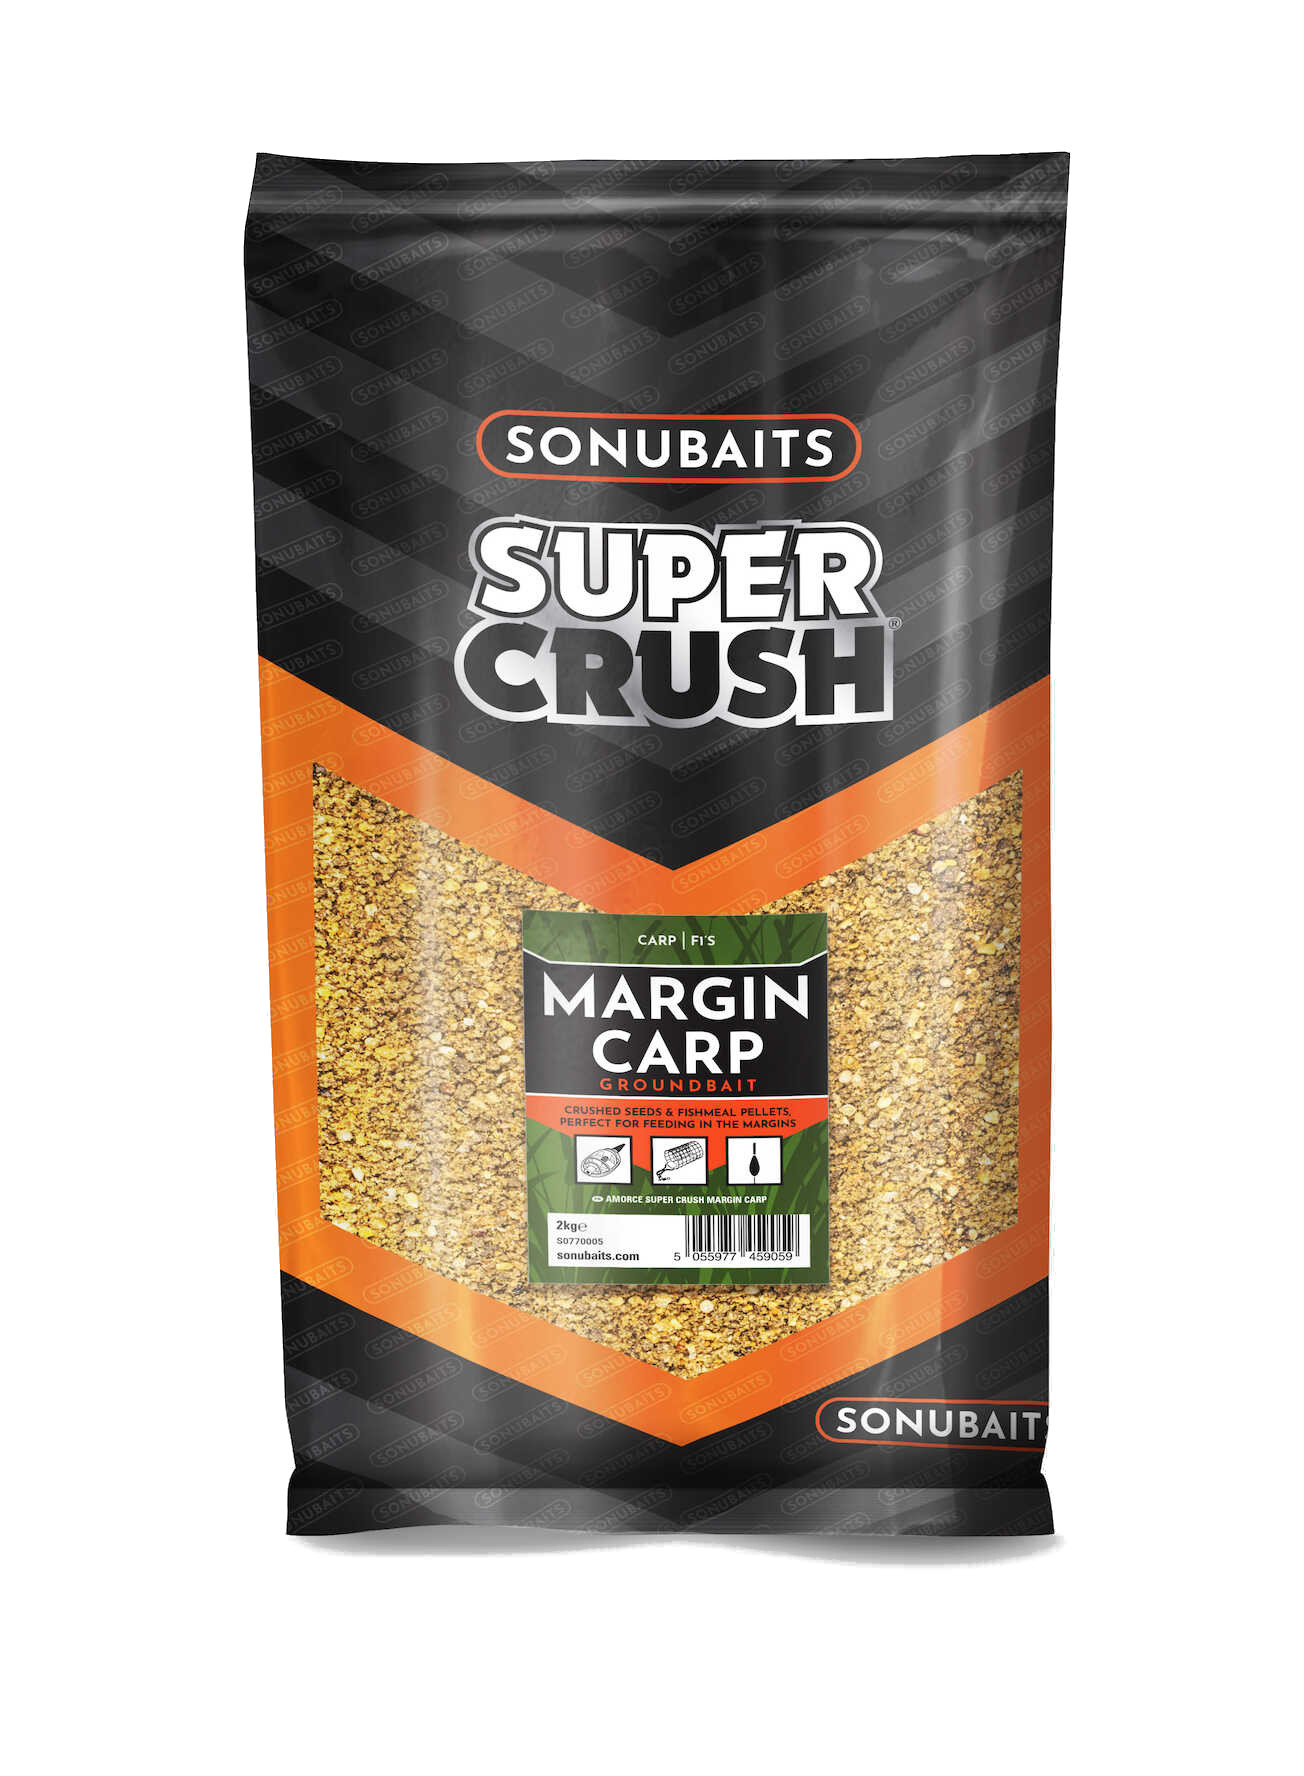 Sonubaits Supercrush Margin Carp Cebo (2kg)